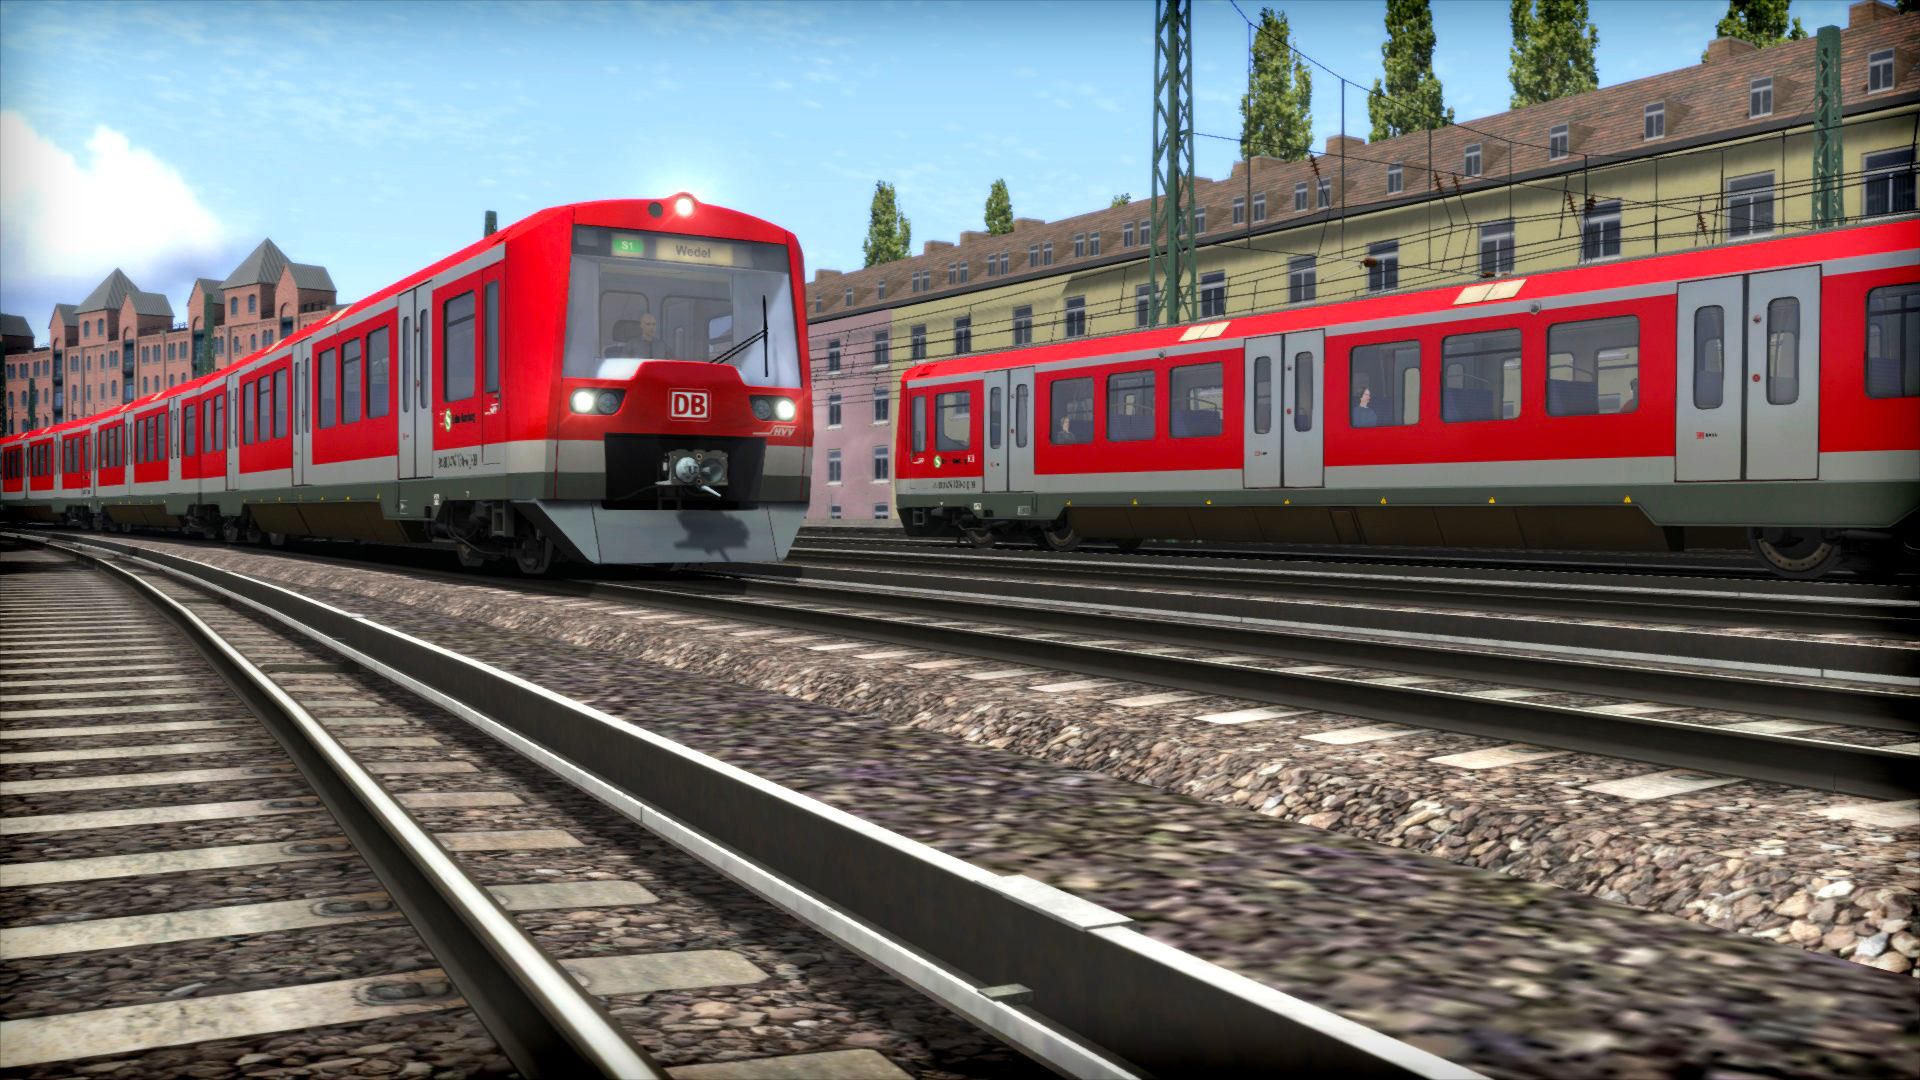 Train Simulator: DB BR 474.3 EMU Add-On screenshot